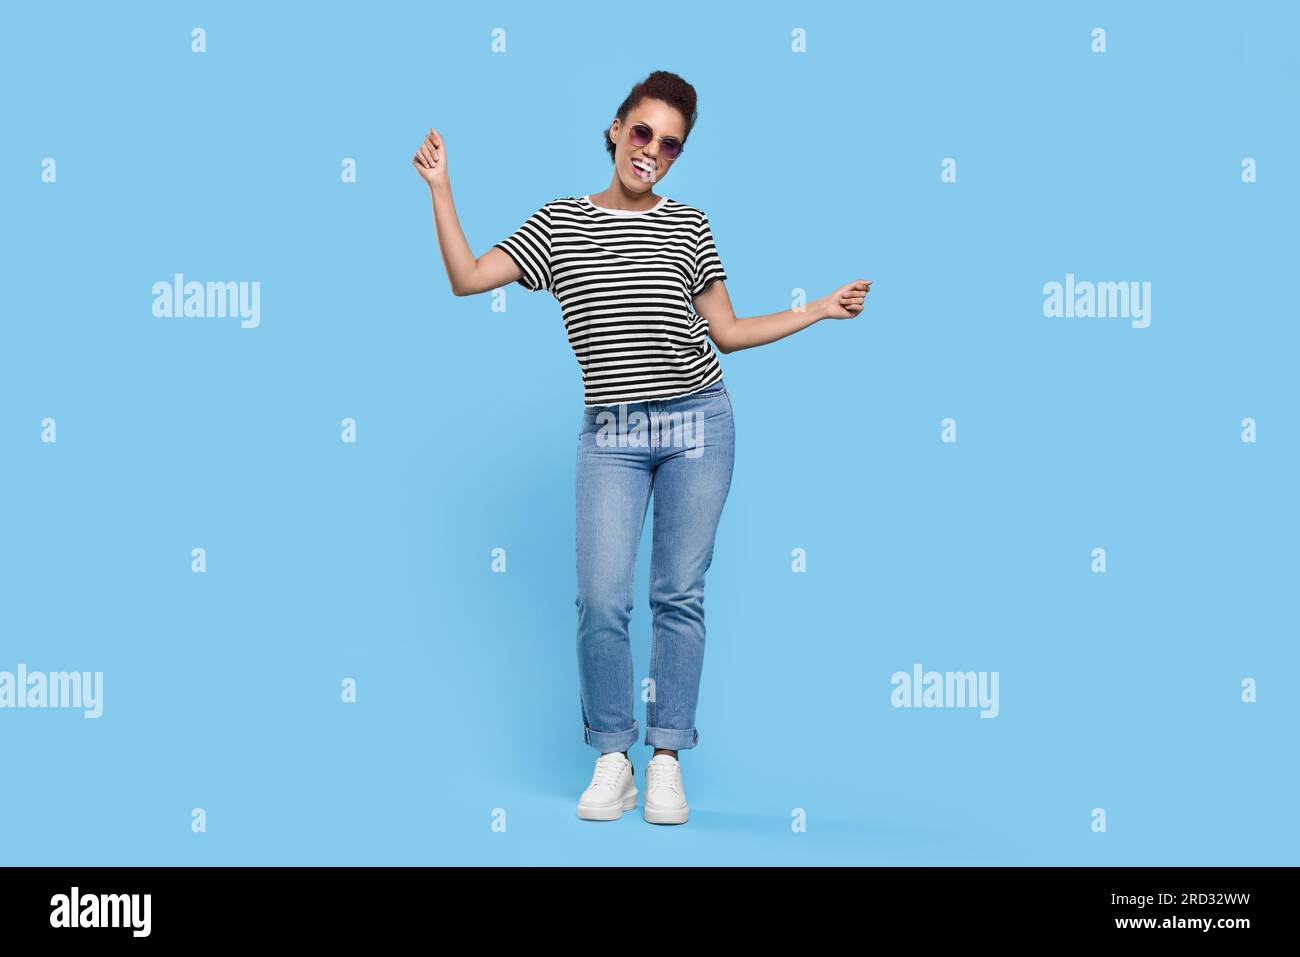 Glückliche junge Frau in stilvoller Sonnenbrille, die auf hellblauem Hintergrund tanzt Stockfoto